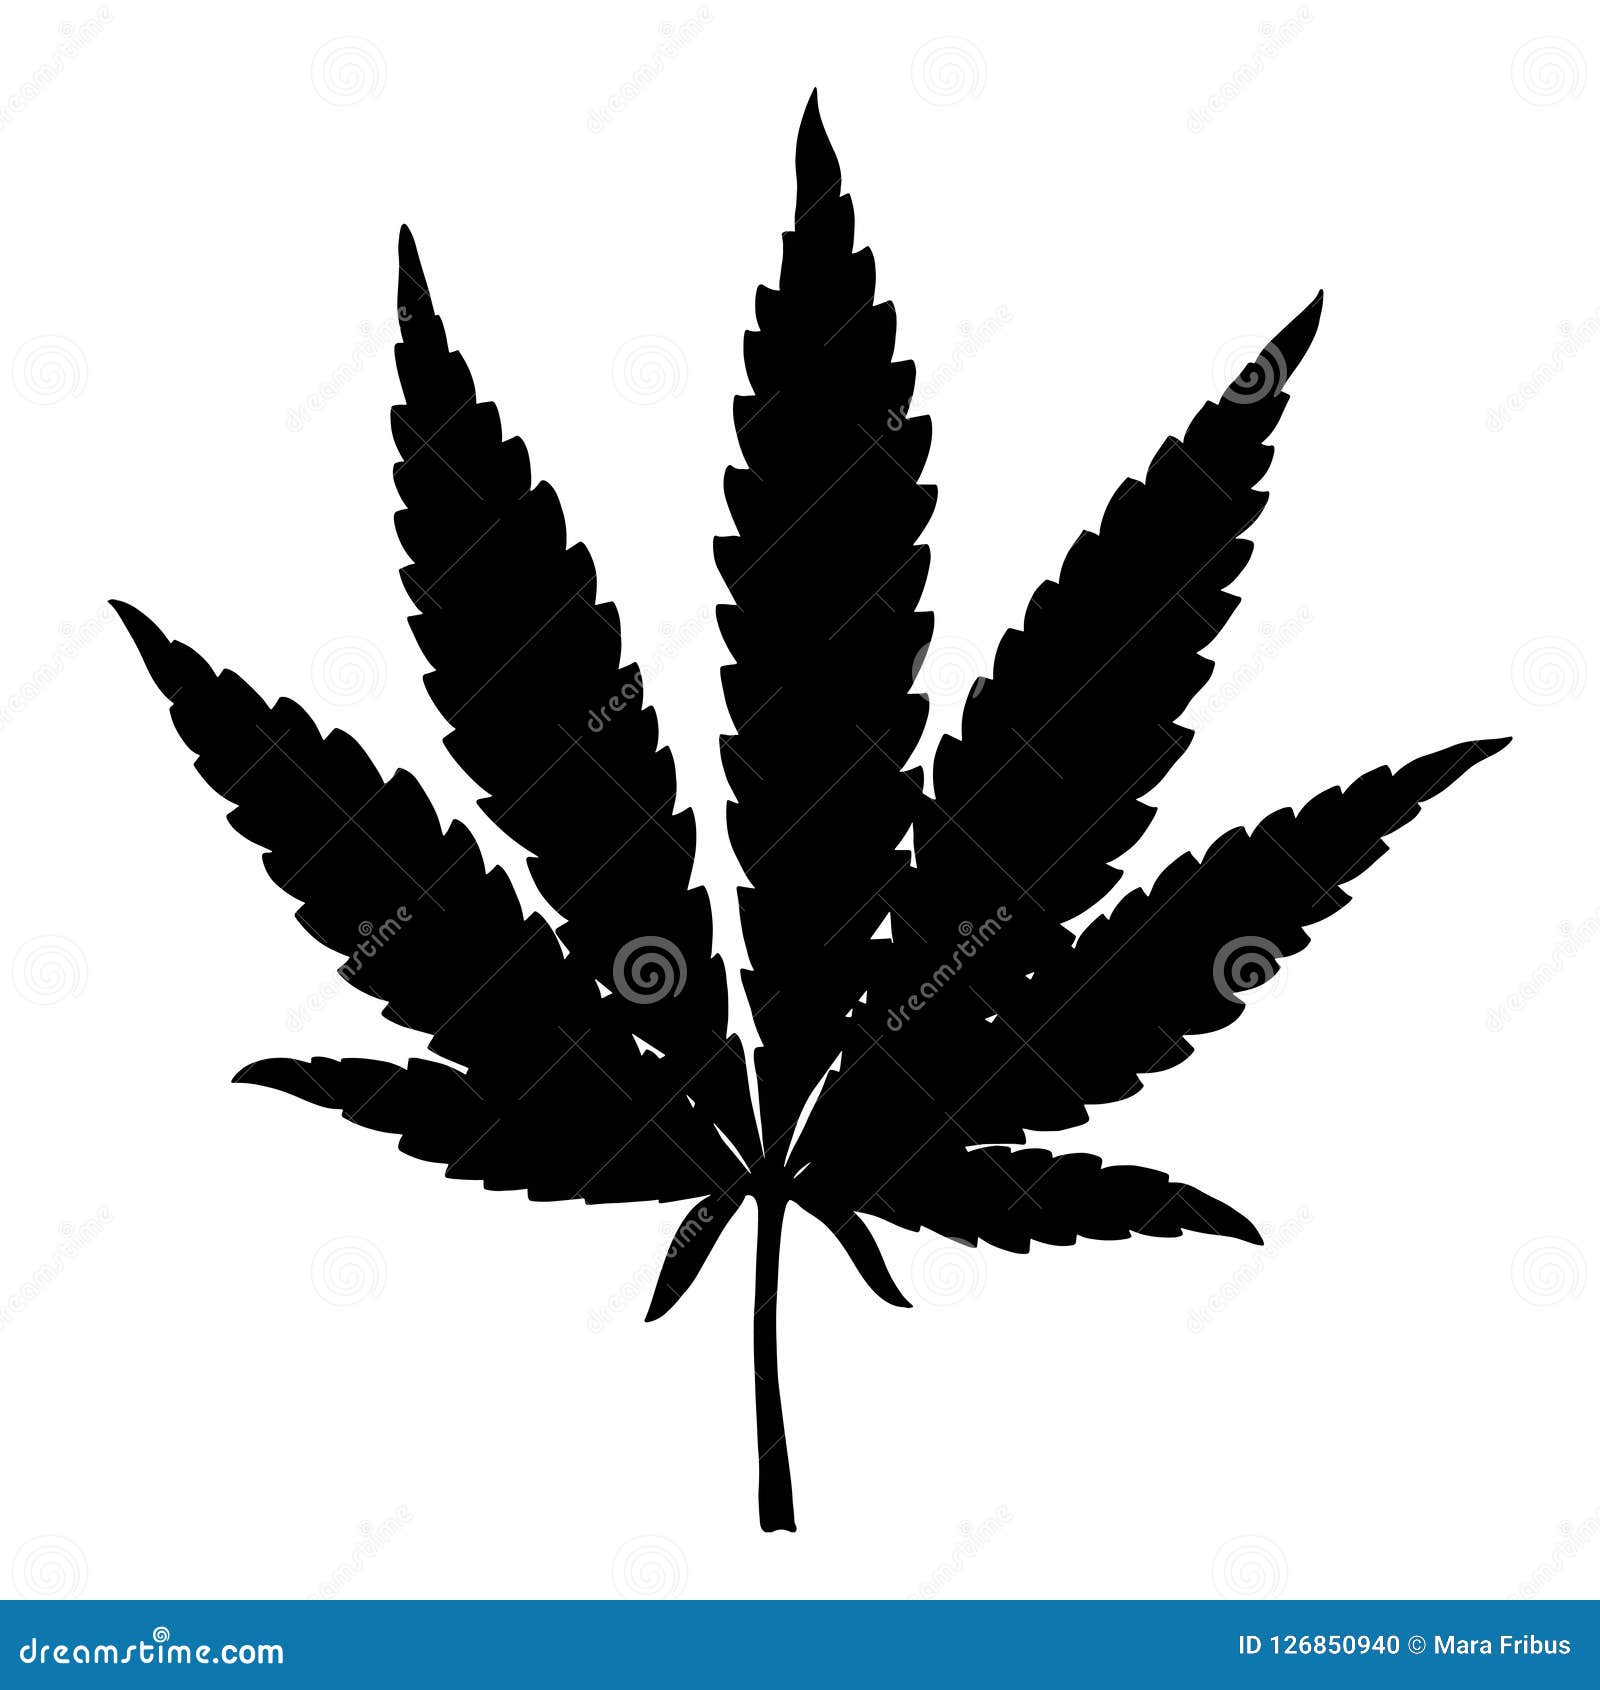 Нарисованные картинки марихуаны как найти в тор браузере детскую порнографию hyrda